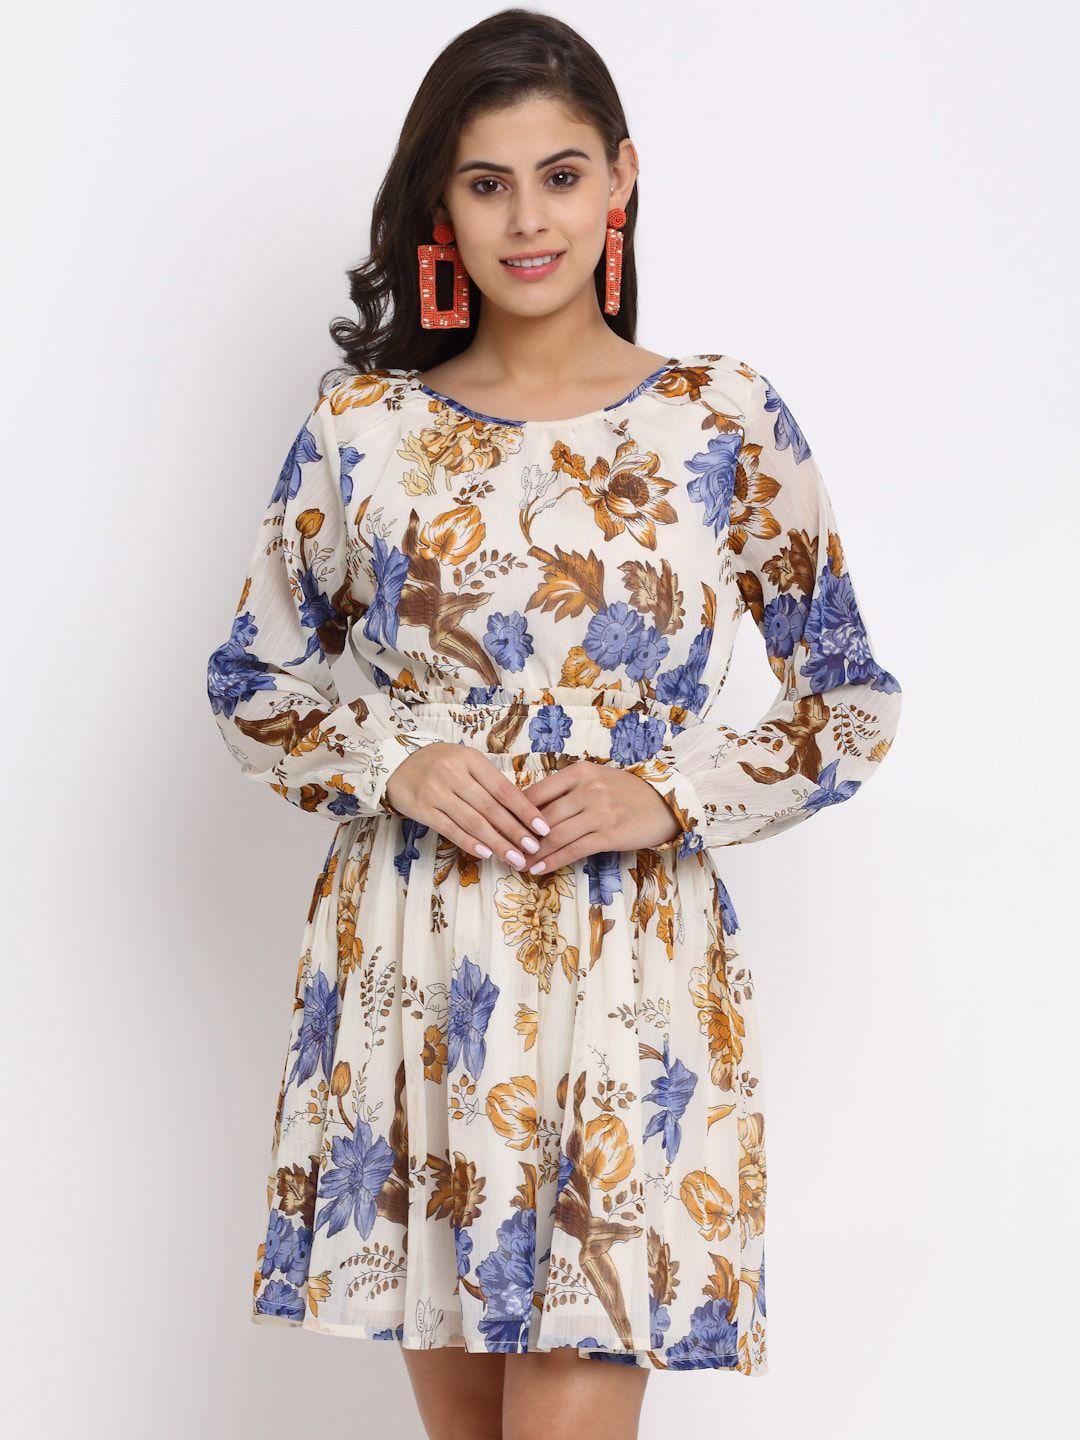 neudis white & blue floral chiffon dress